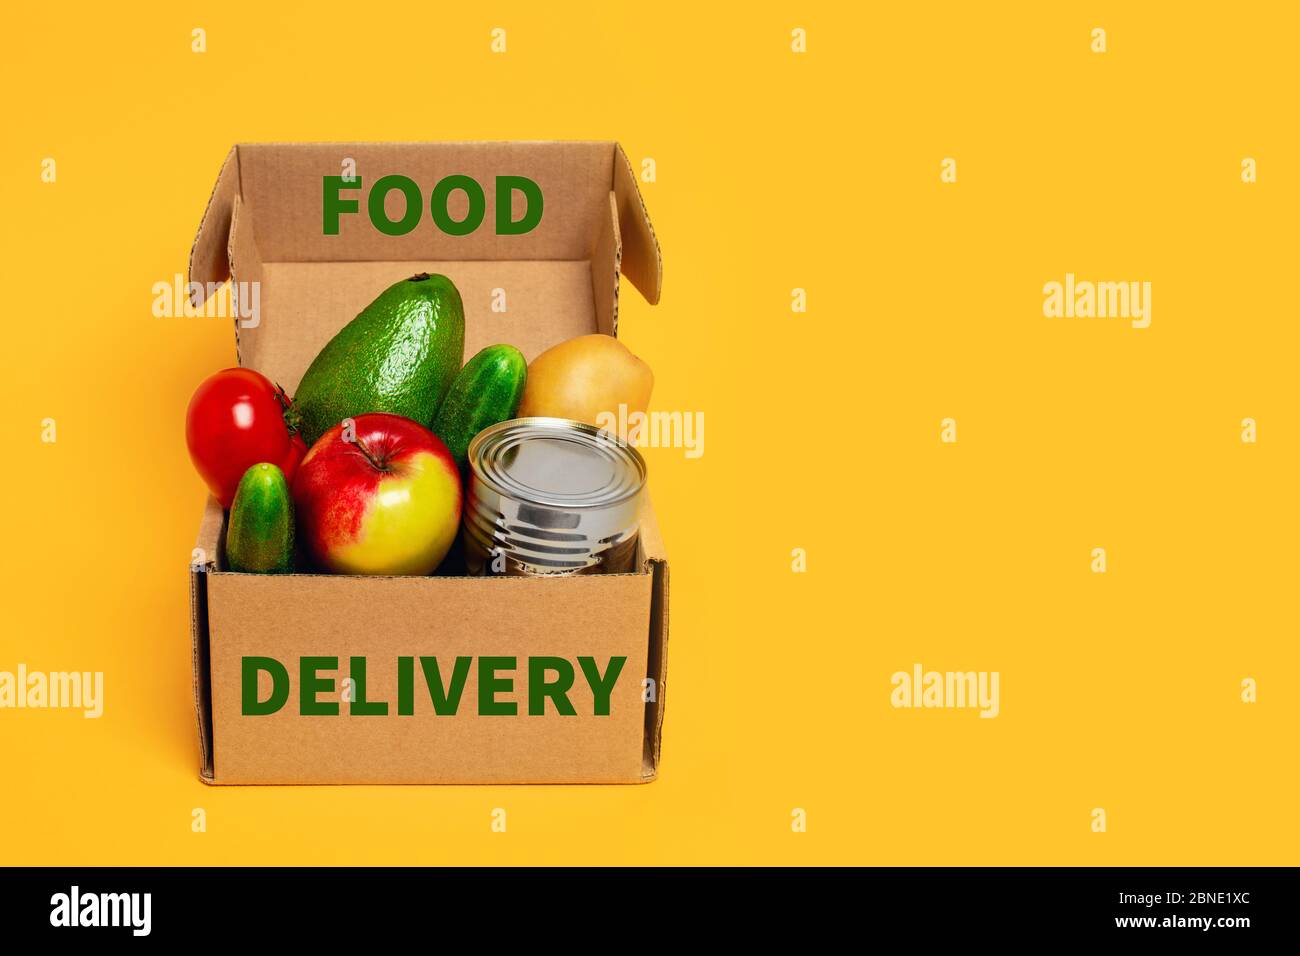 Kontaktloser Satz fertiger Produktkits. Vorderansicht mit Lebensmittelbox auf gelbem Hintergrund. Stockfoto